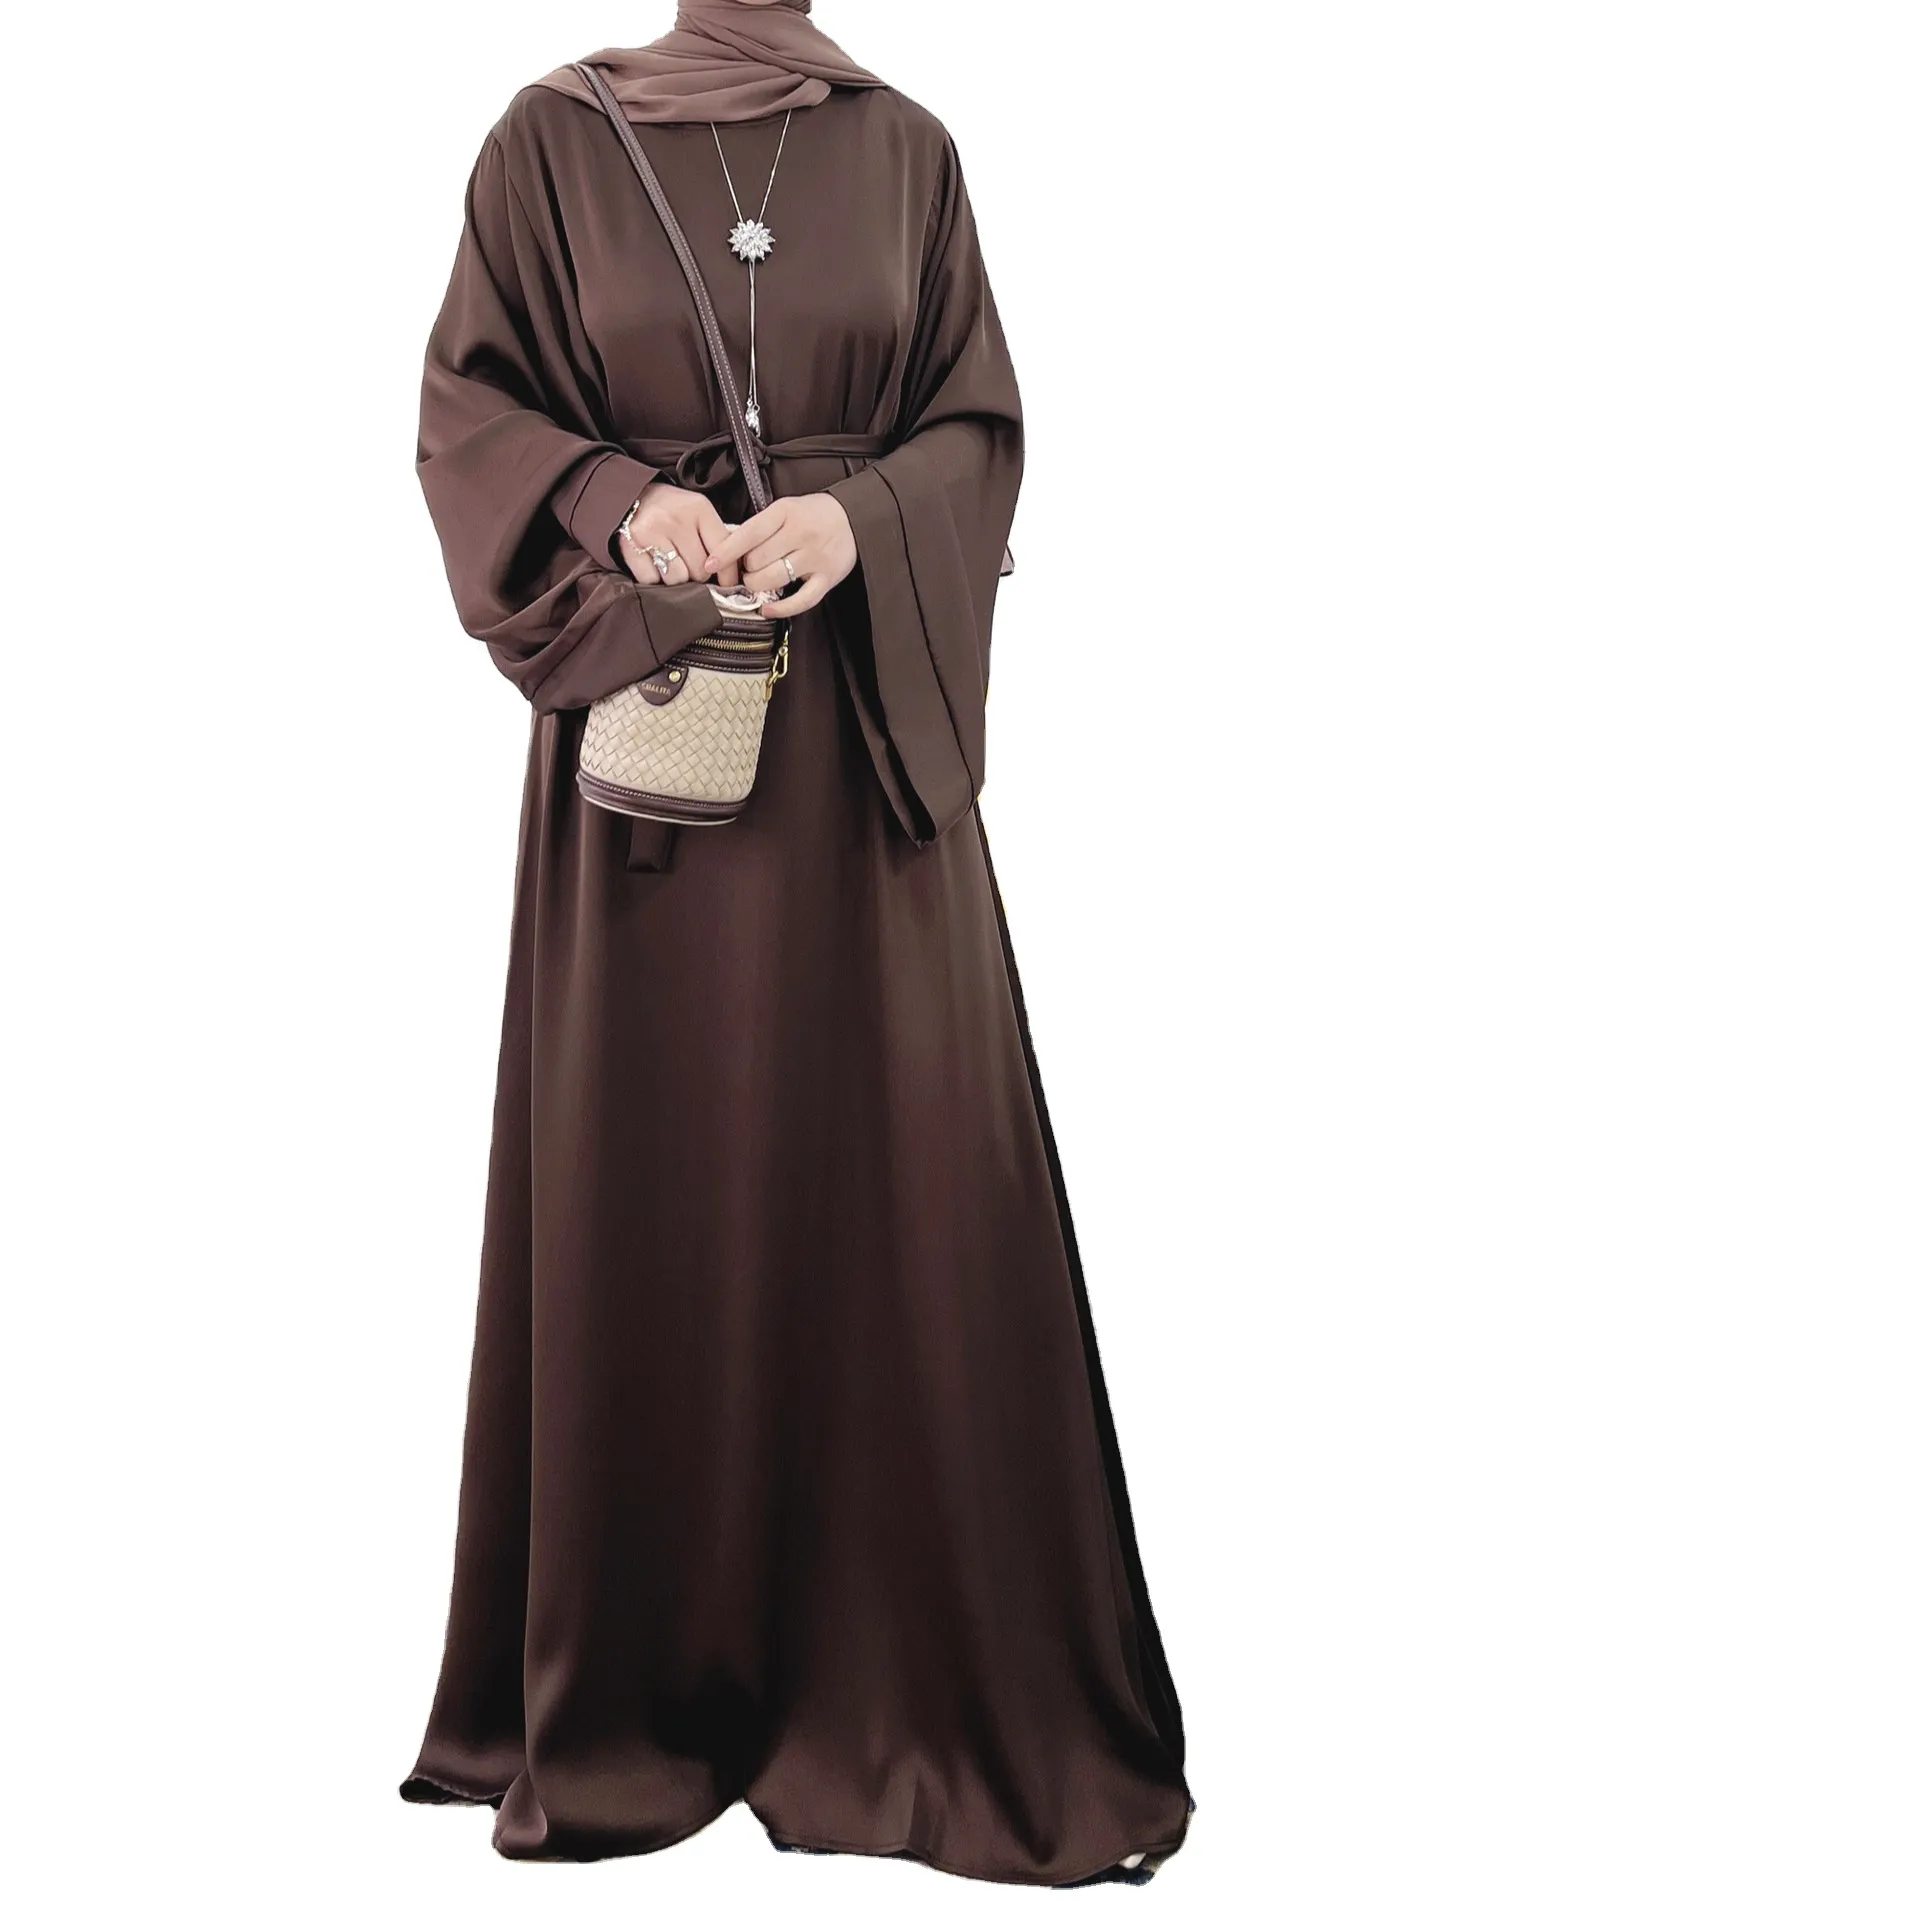 ตุรกีสีทึบเรียบง่ายเจียมเนื้อเจียมตัว Kaftan เสื้อผ้าอิสลาม Abaya ชุดมุสลิมสไตล์ตุรกี Abaya เข็มขัดเอวสีทึบย้อม